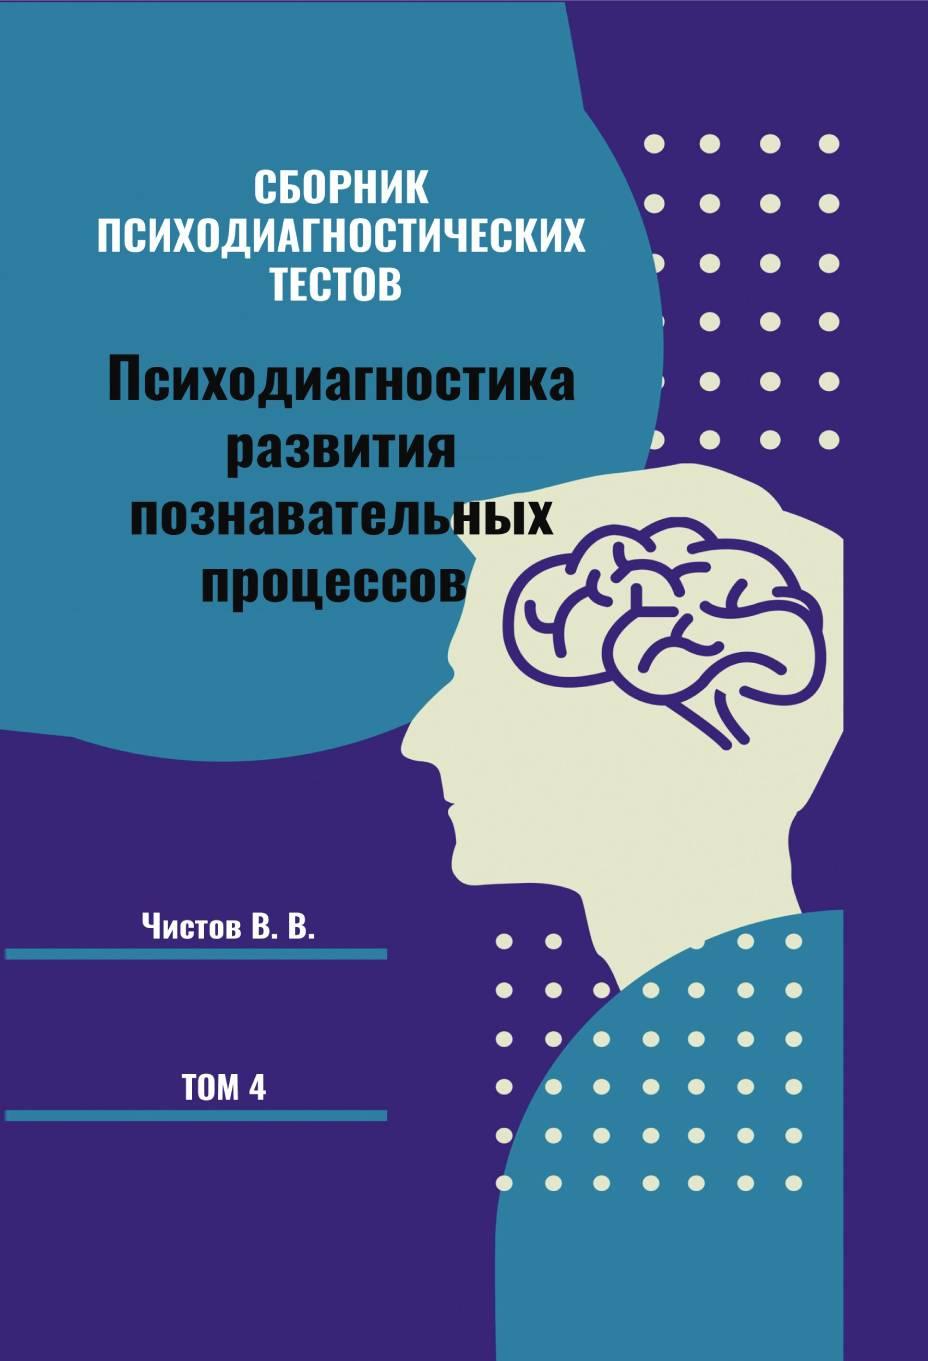 Сборник психодиагностических тестов. Психодиагностика развитияпознавательных процессов. Книга 4.